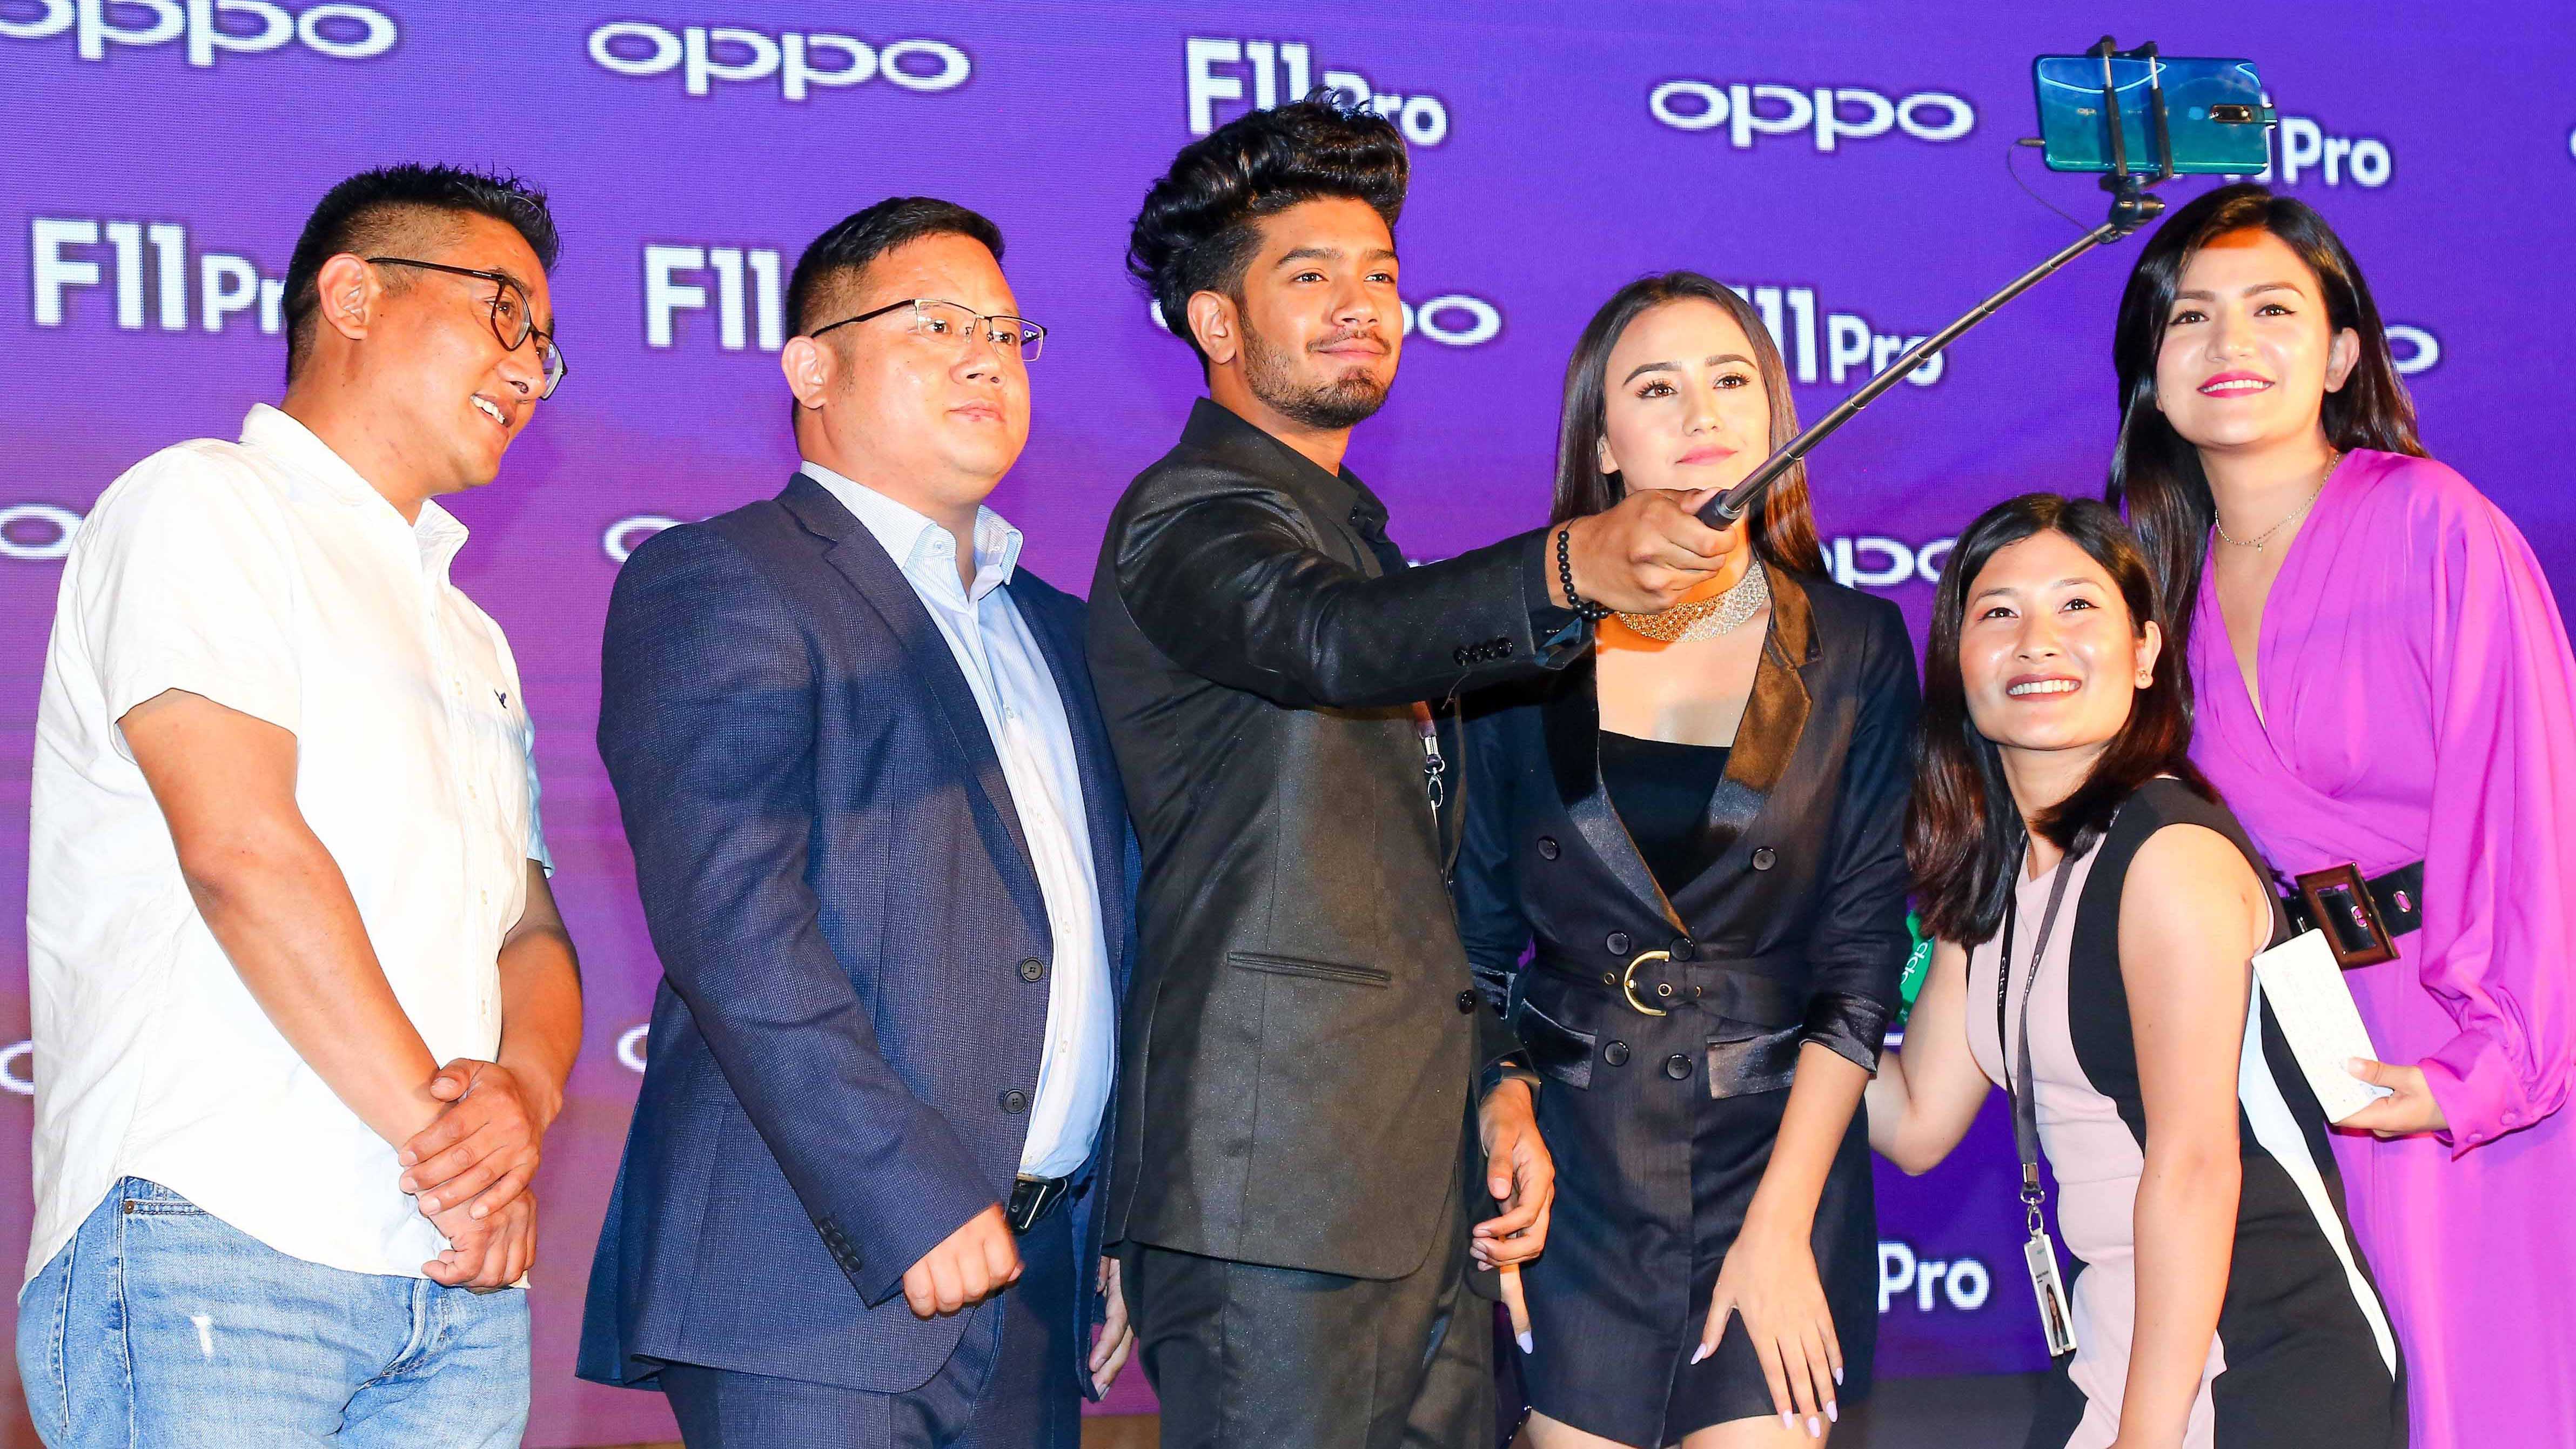 OPPO F11 Pro Price in Nepal